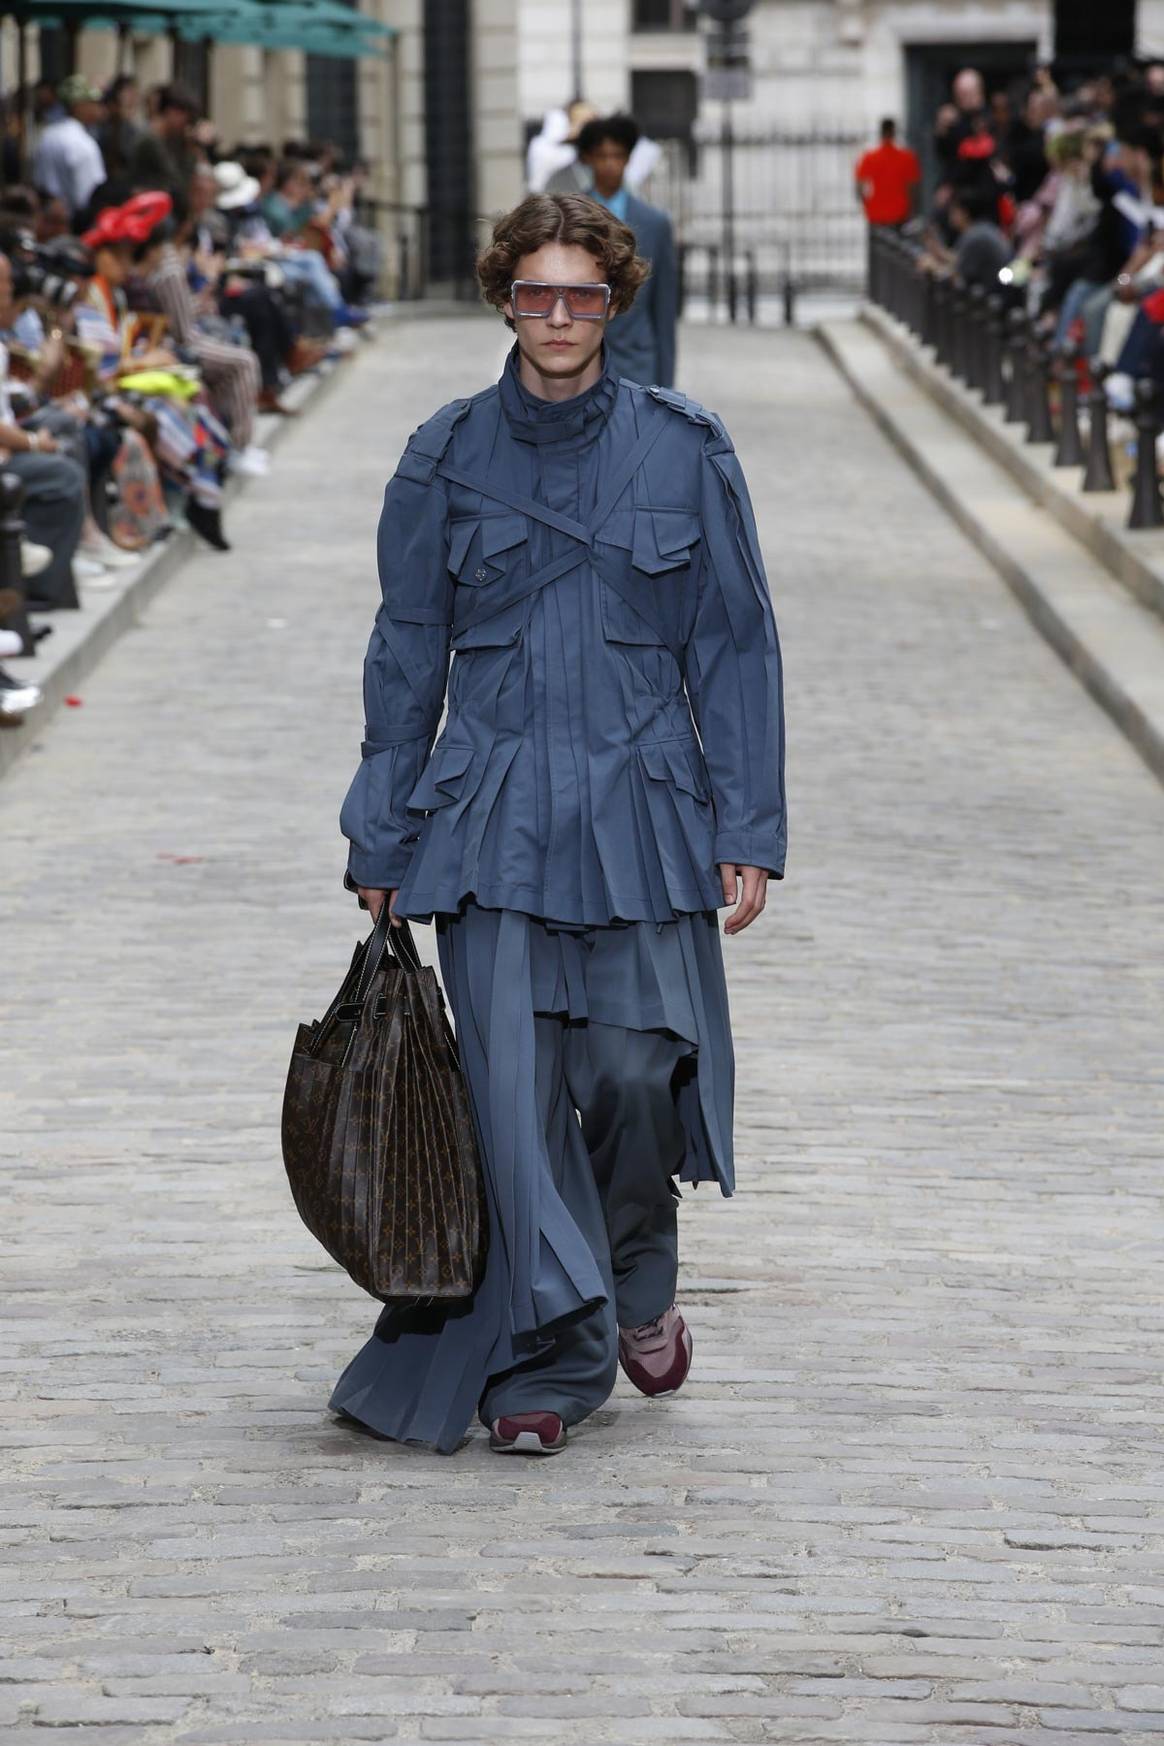 Paris Fashion Week Homme : défilés floraux chez Vuitton et Dries van Noten